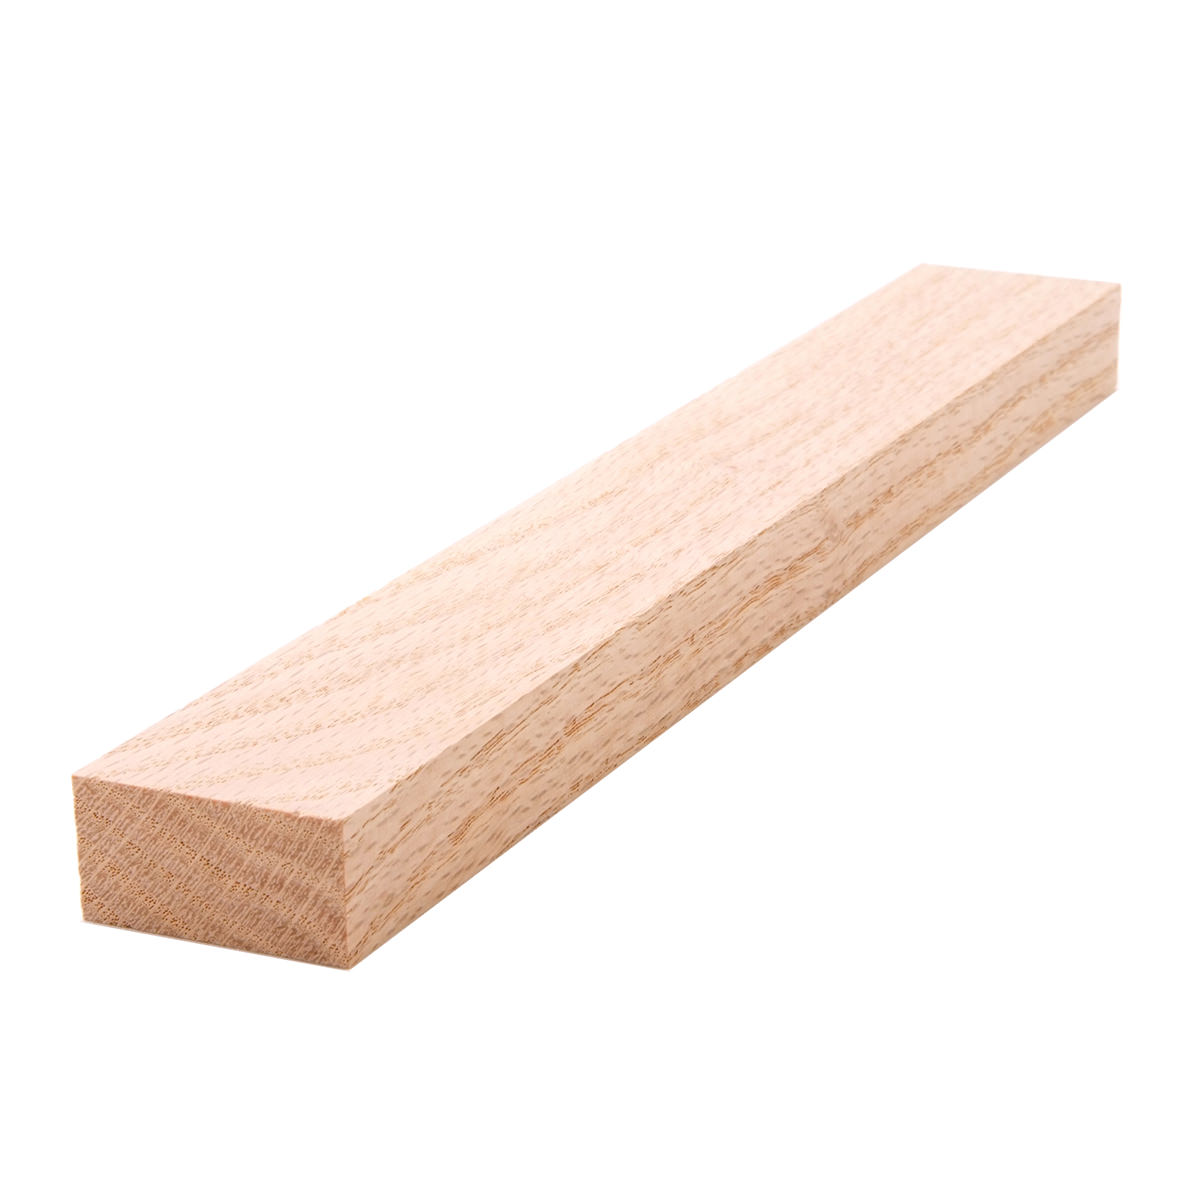 1x2 (3/4" x 11/2") Red Oak S4S Lumber, Boards, & Flat